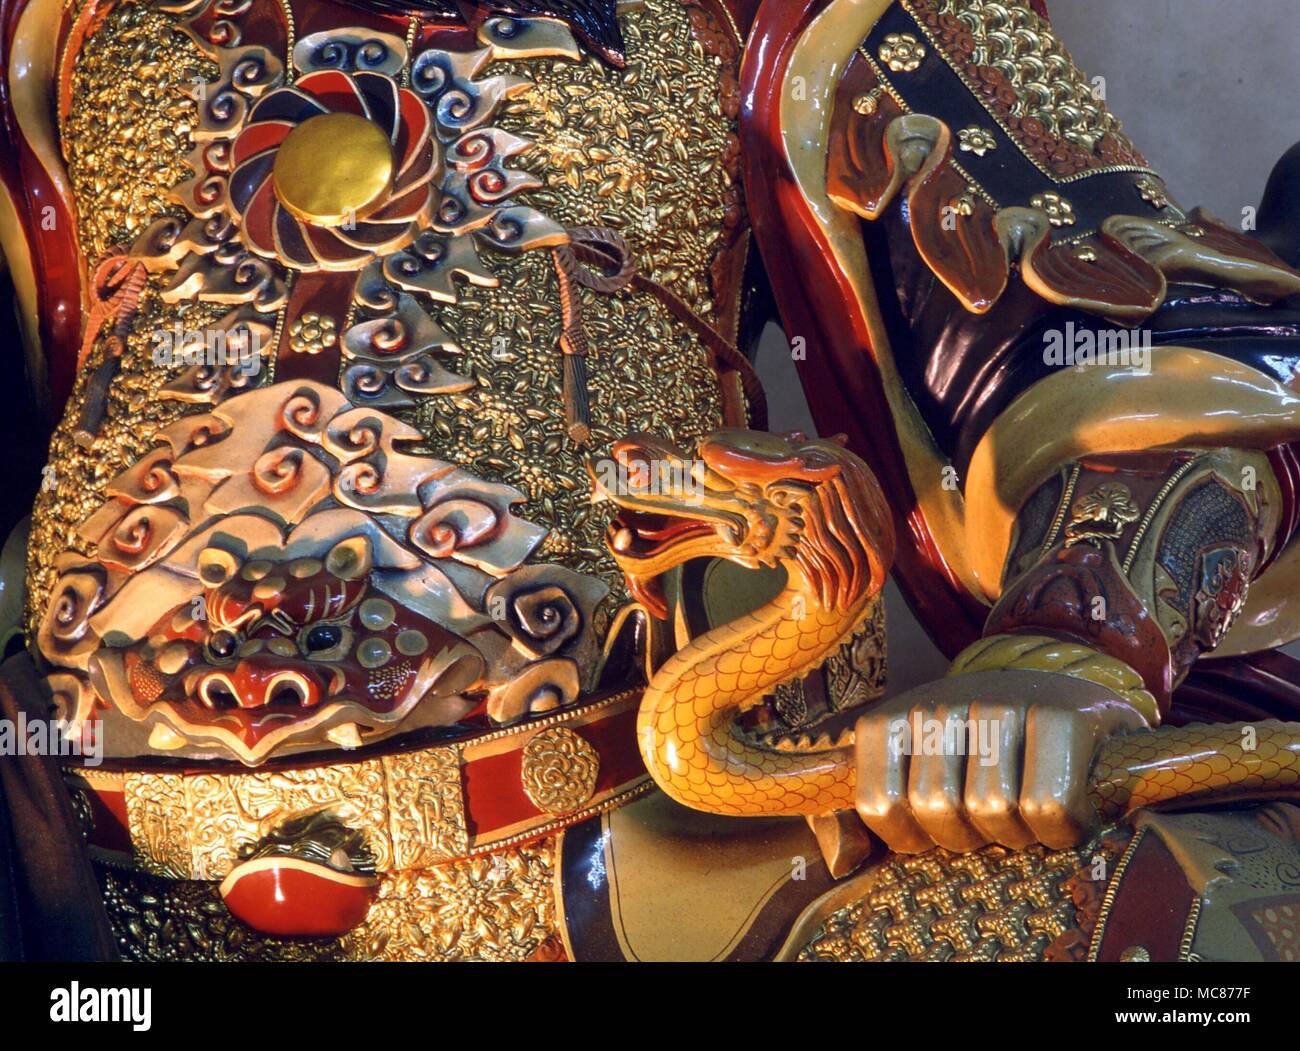 Die Schlange, in der Hand des chinesischen Himmlischer König gehalten, "die gut bekannt", bei denen die Schlange ist ein wichtiges Attribut. Po Lin Kloster, Lantau Stockfoto